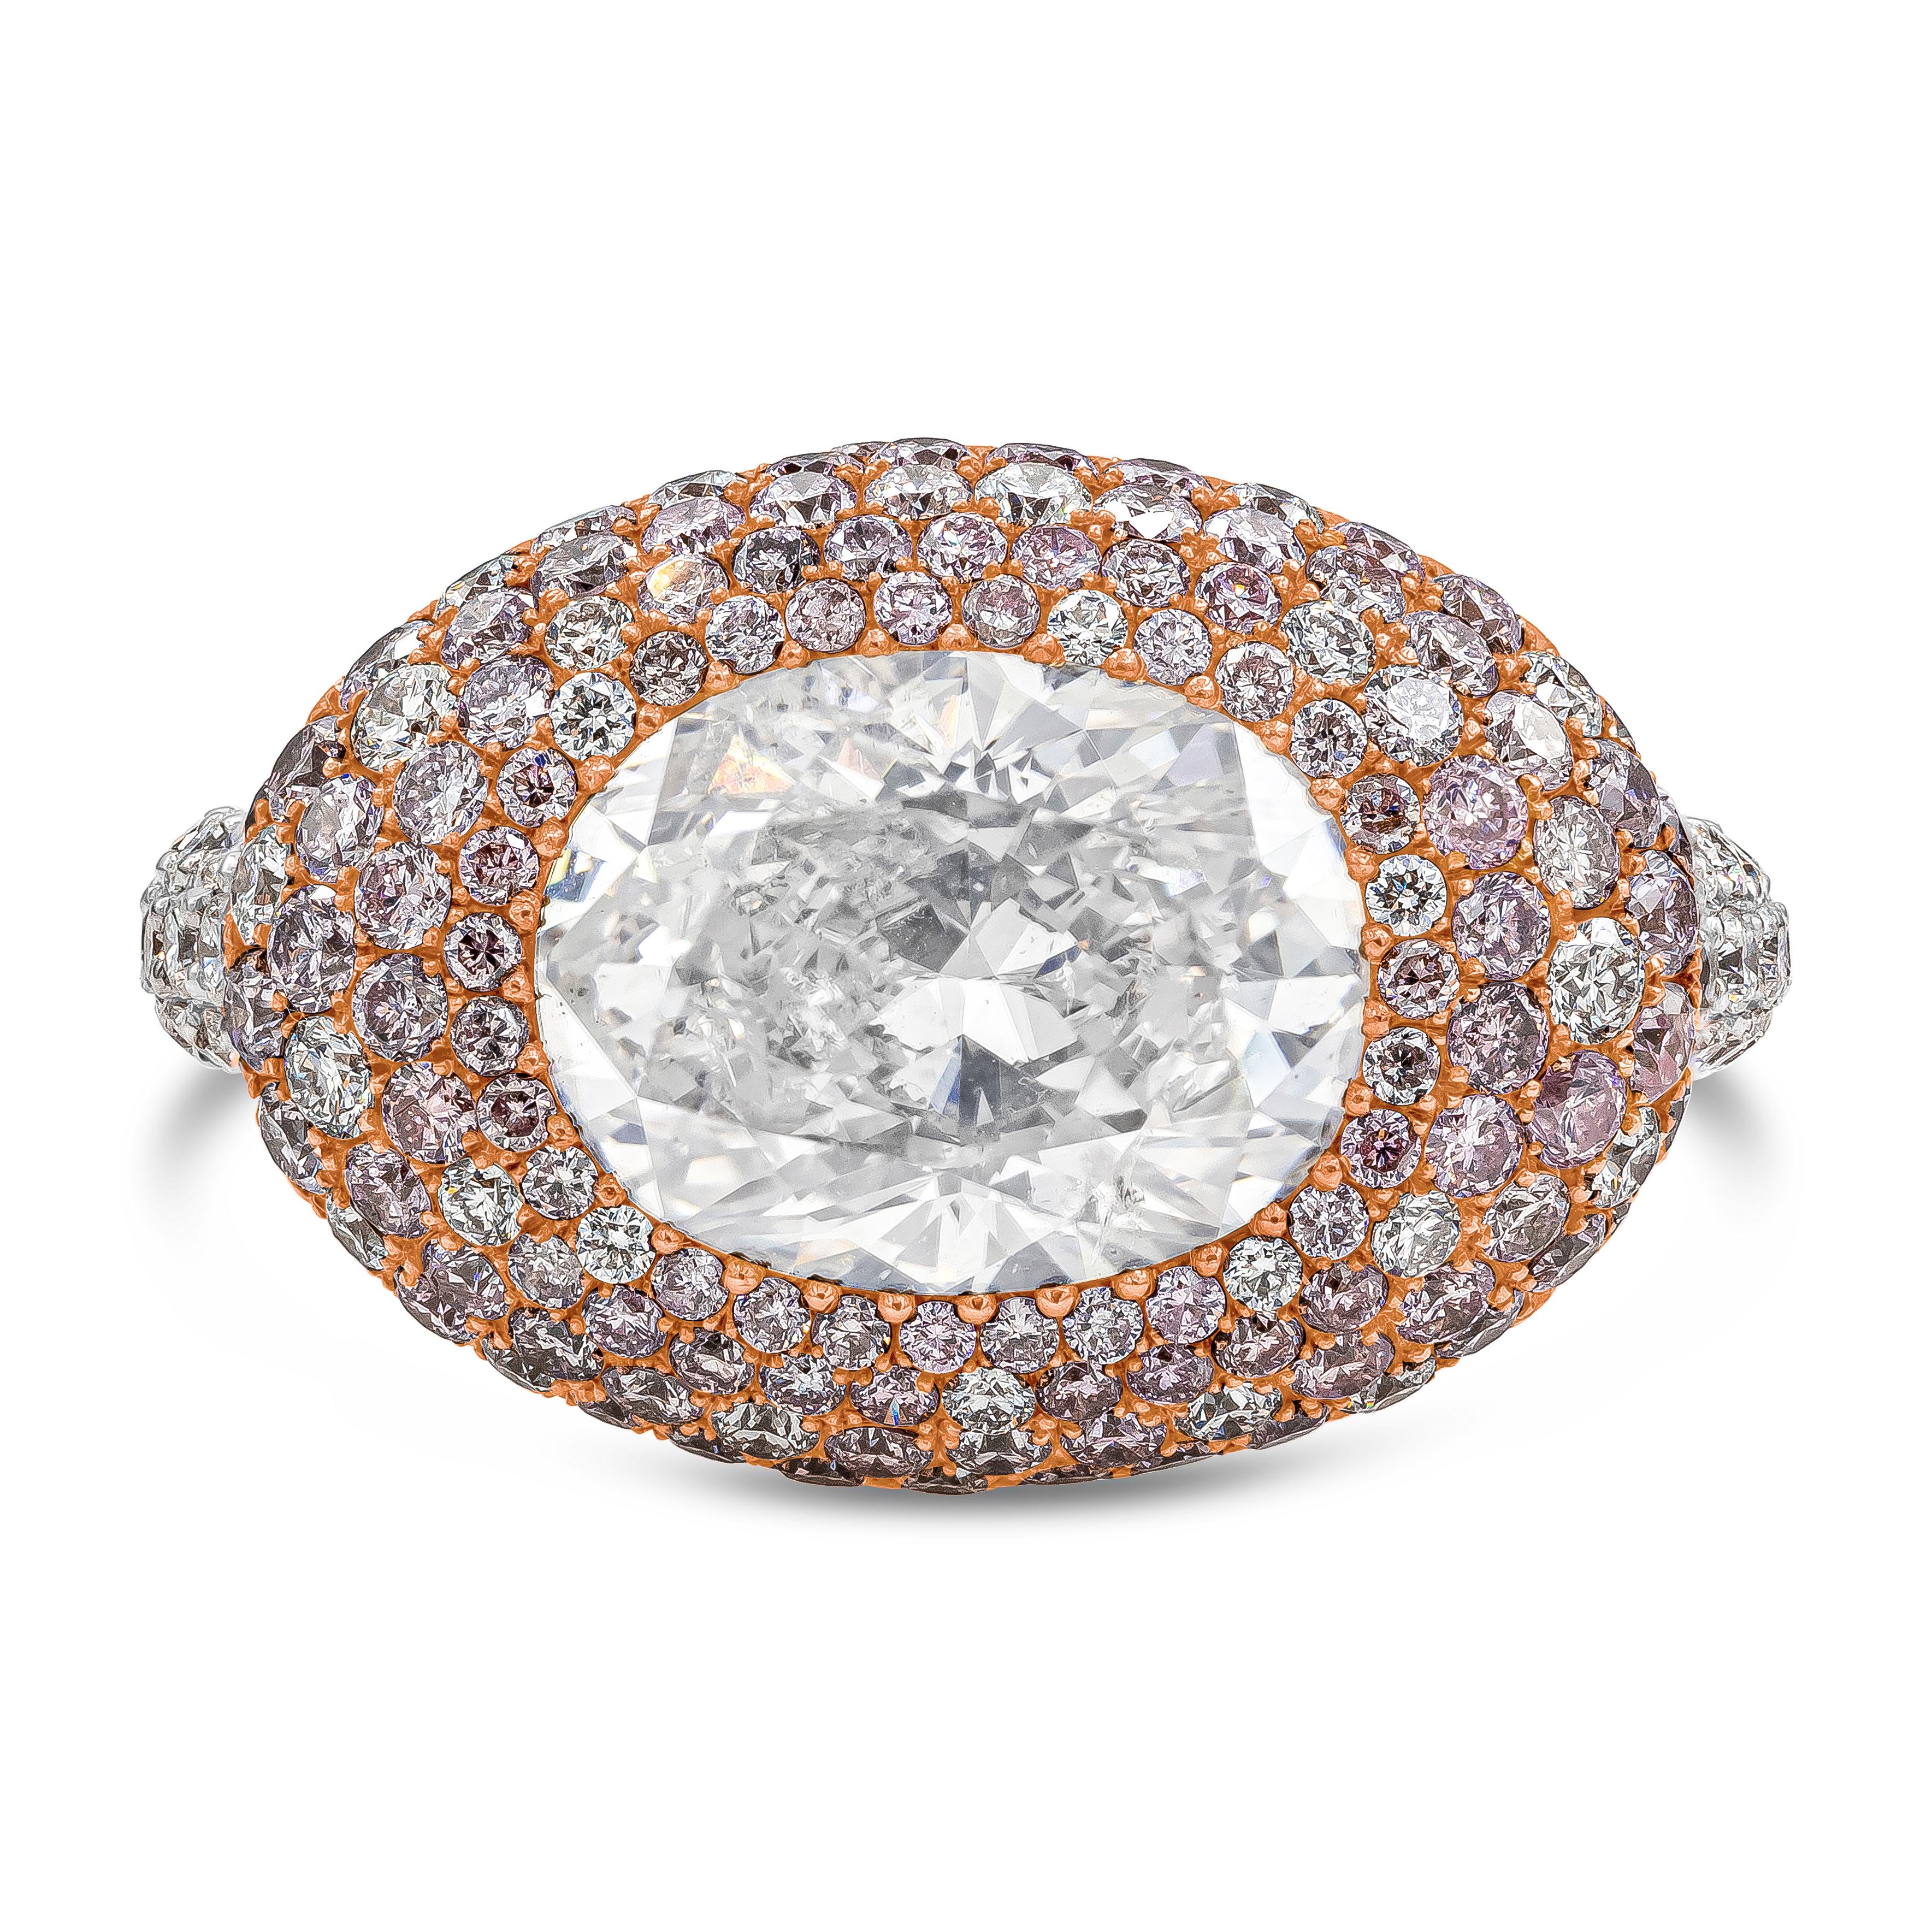 Ein luxuriöser und modischer Kuppel-Cocktailring mit einem oval geschliffenen Diamanten von 4,02 Karat, der von GIA als Natural Fancy White color zertifiziert wurde. Der Ring ist in einer schönen Kuppel mit weißen und rosafarbenen Brillanten